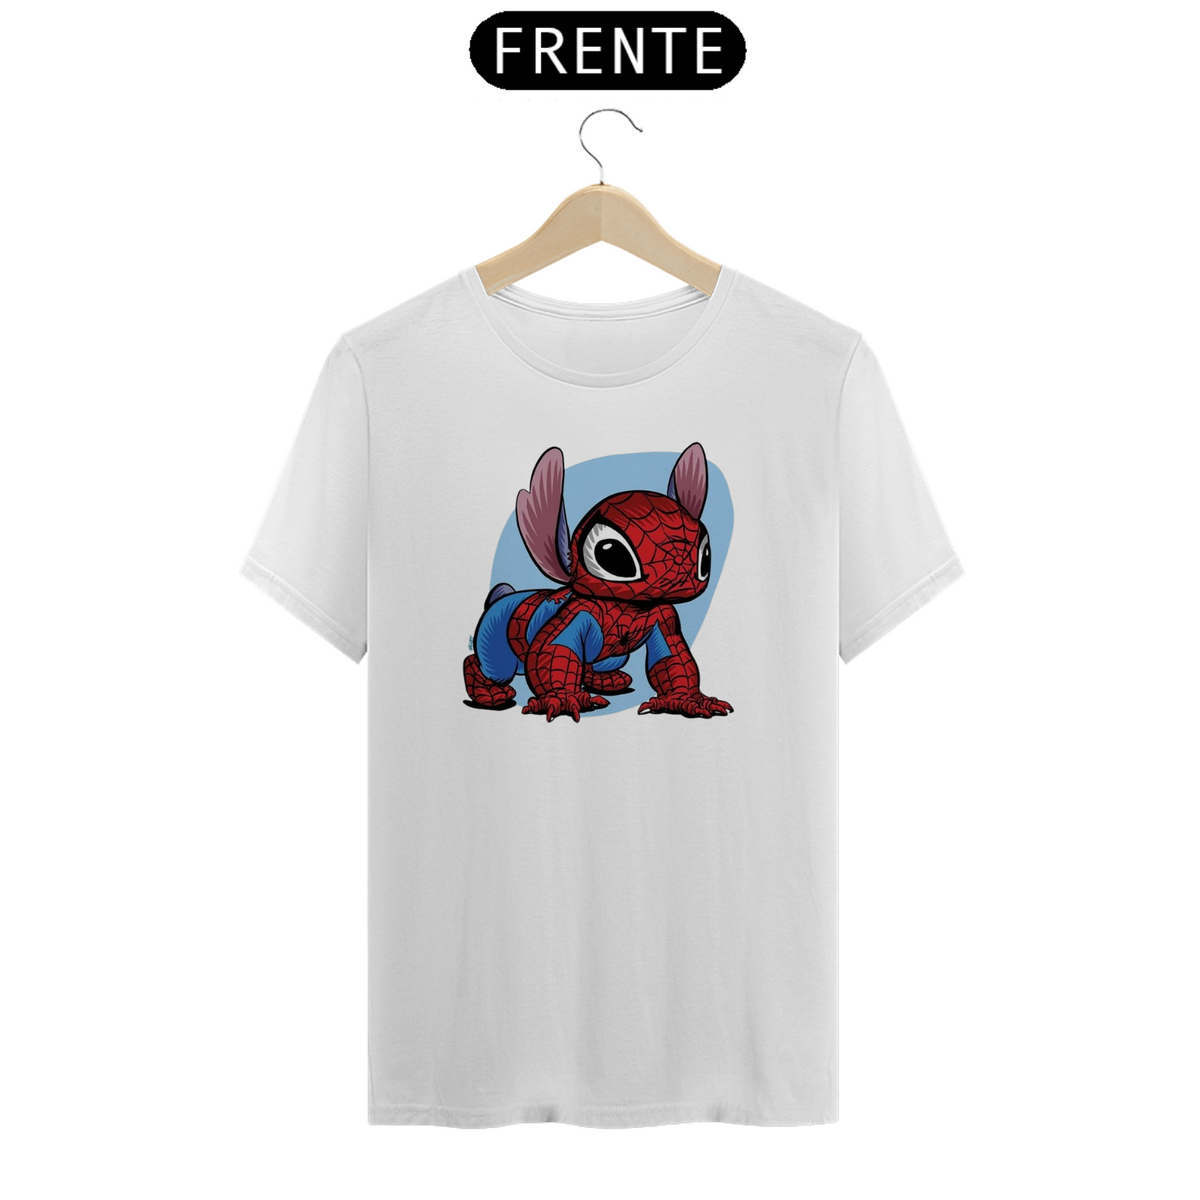 Nome do produto: Camiseta Classica Stitch - Homem Aranha